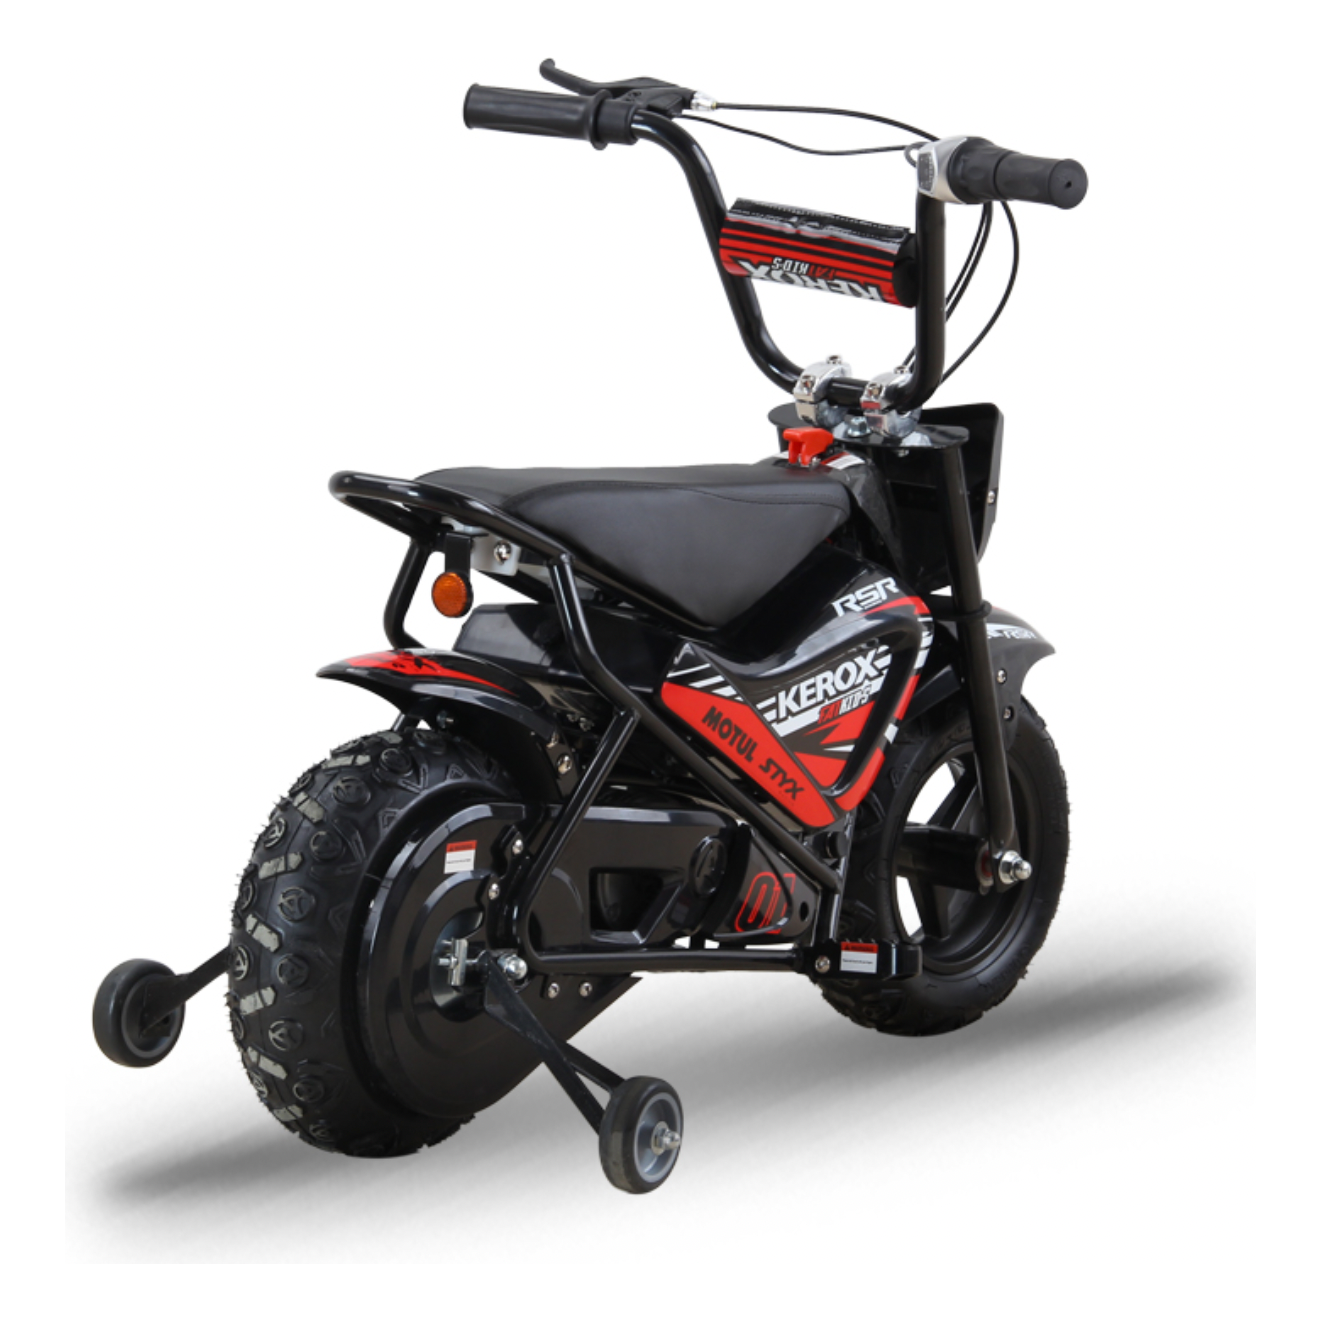 Moto enfant électrique 250W KEROX E-FAT KIDS